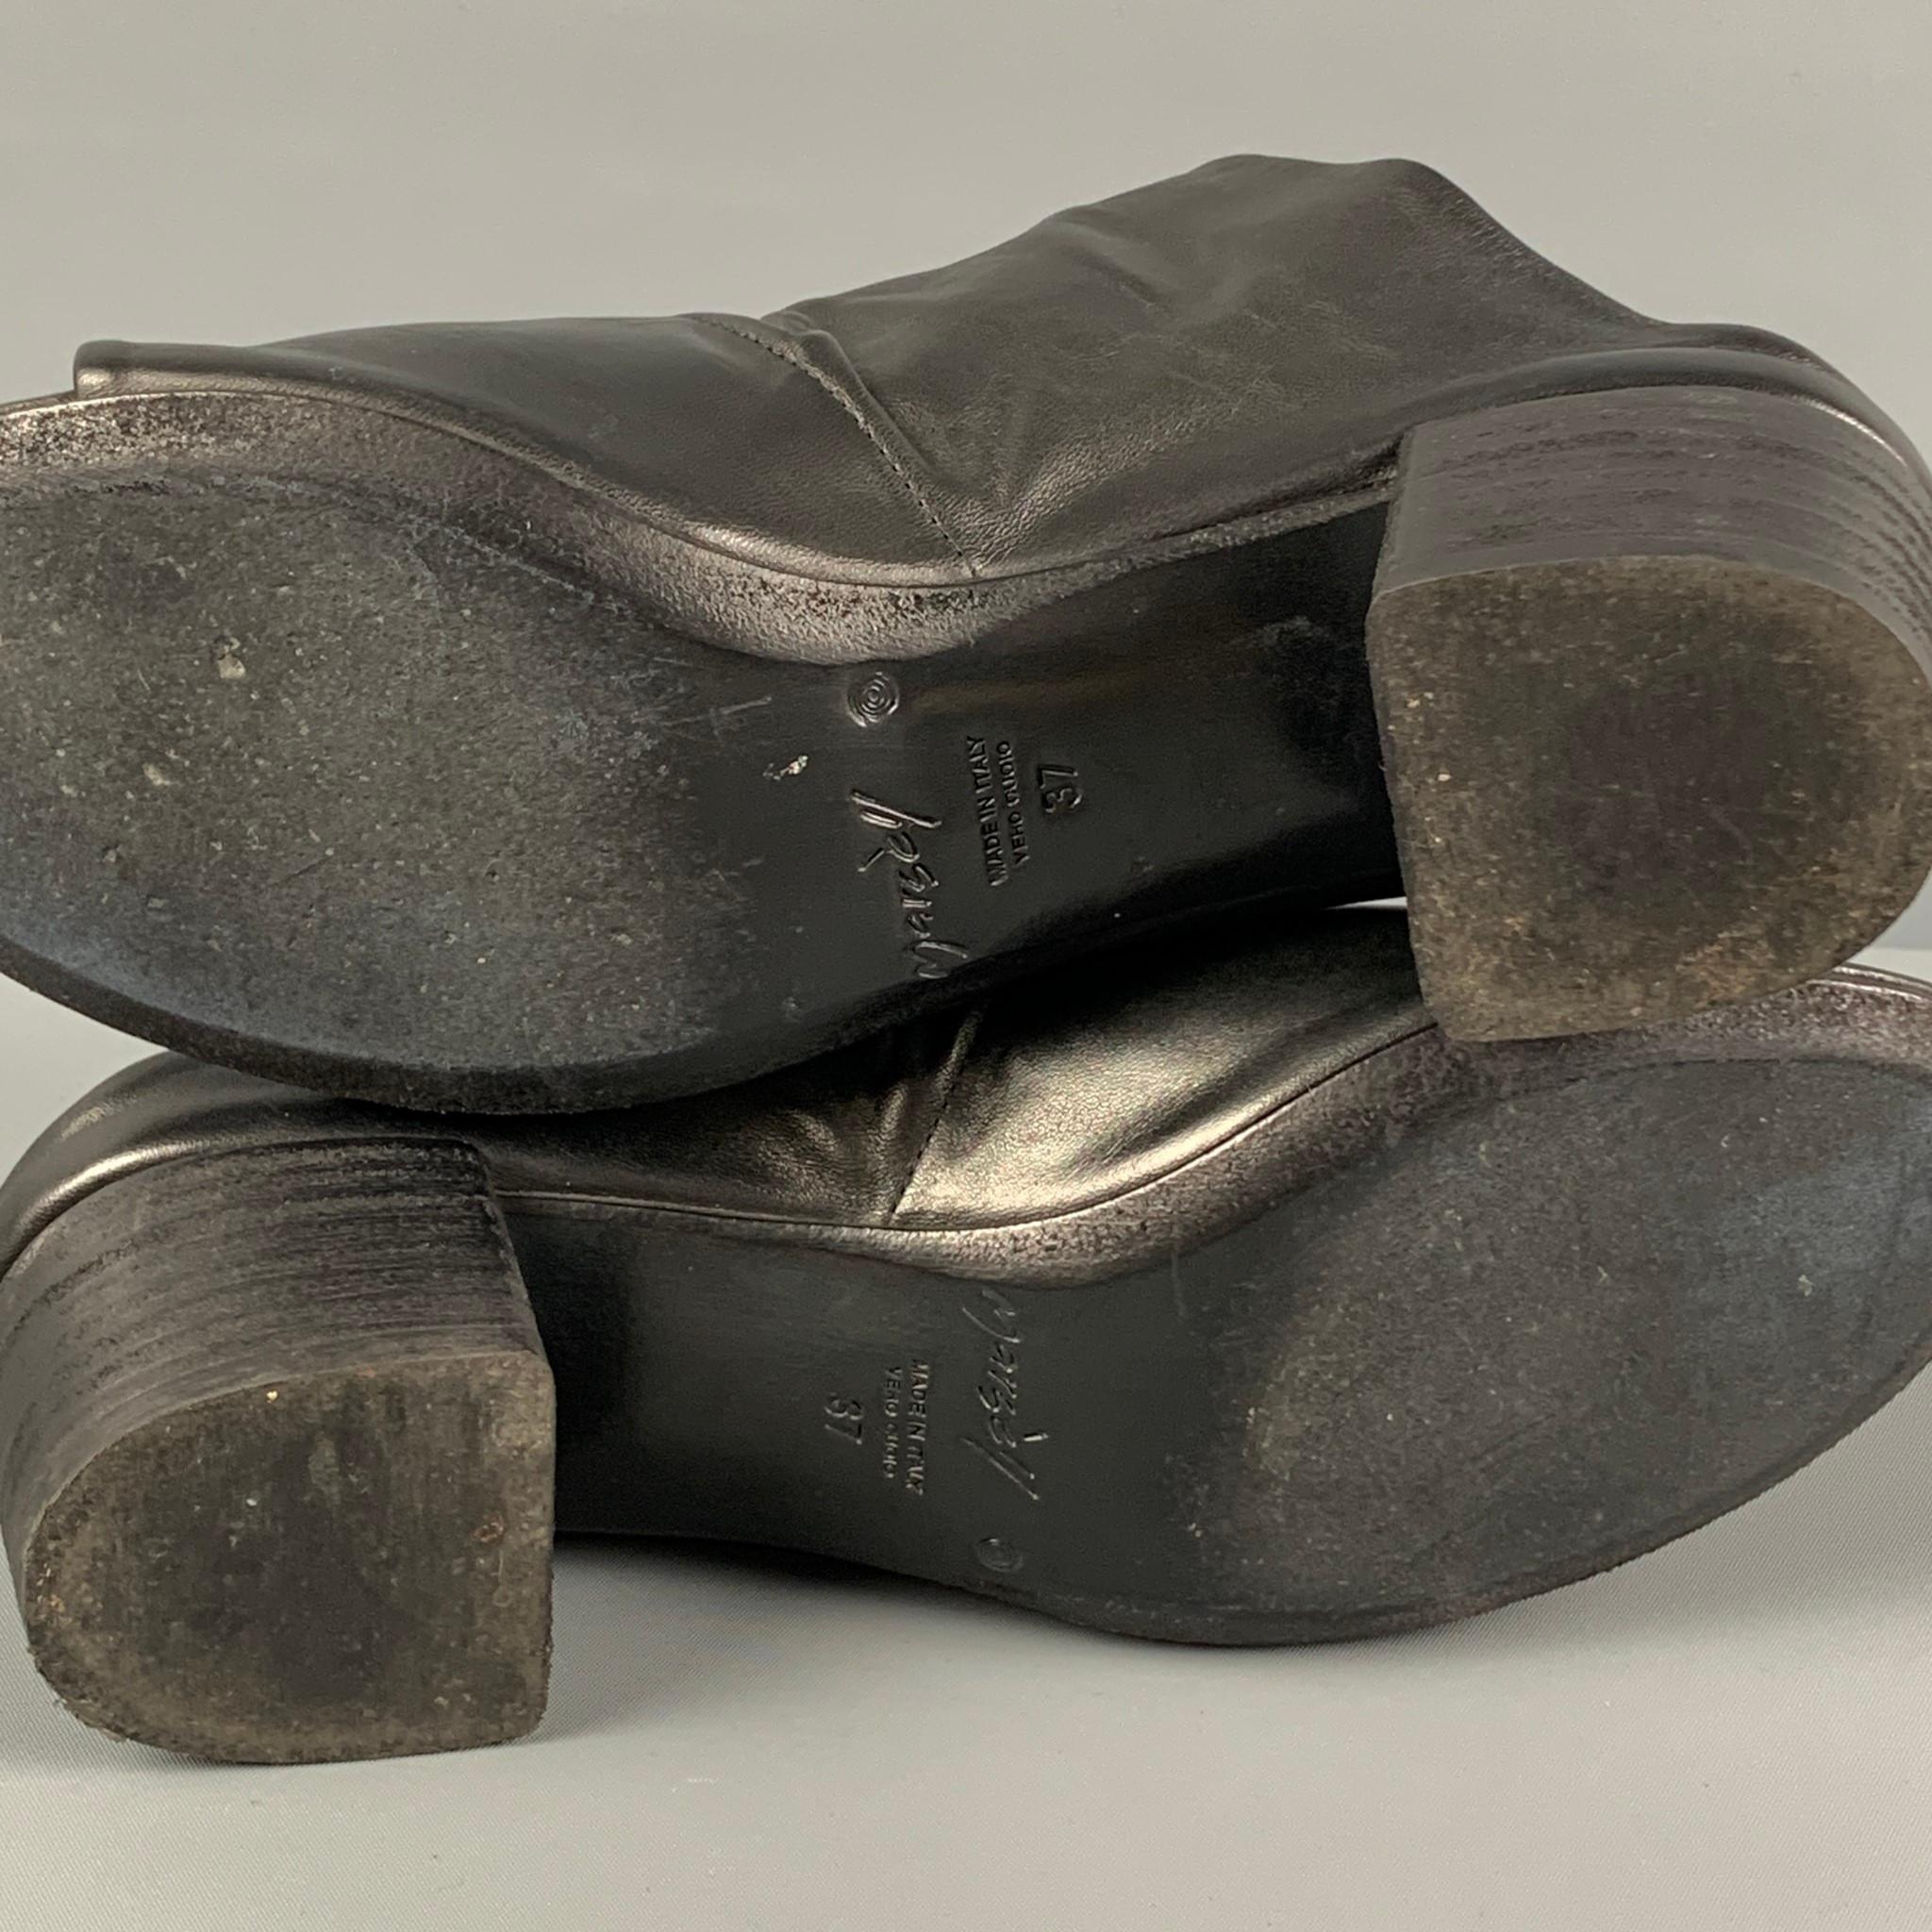 MARSELL Size 7 Black Leather Peep Toe Sandals 3